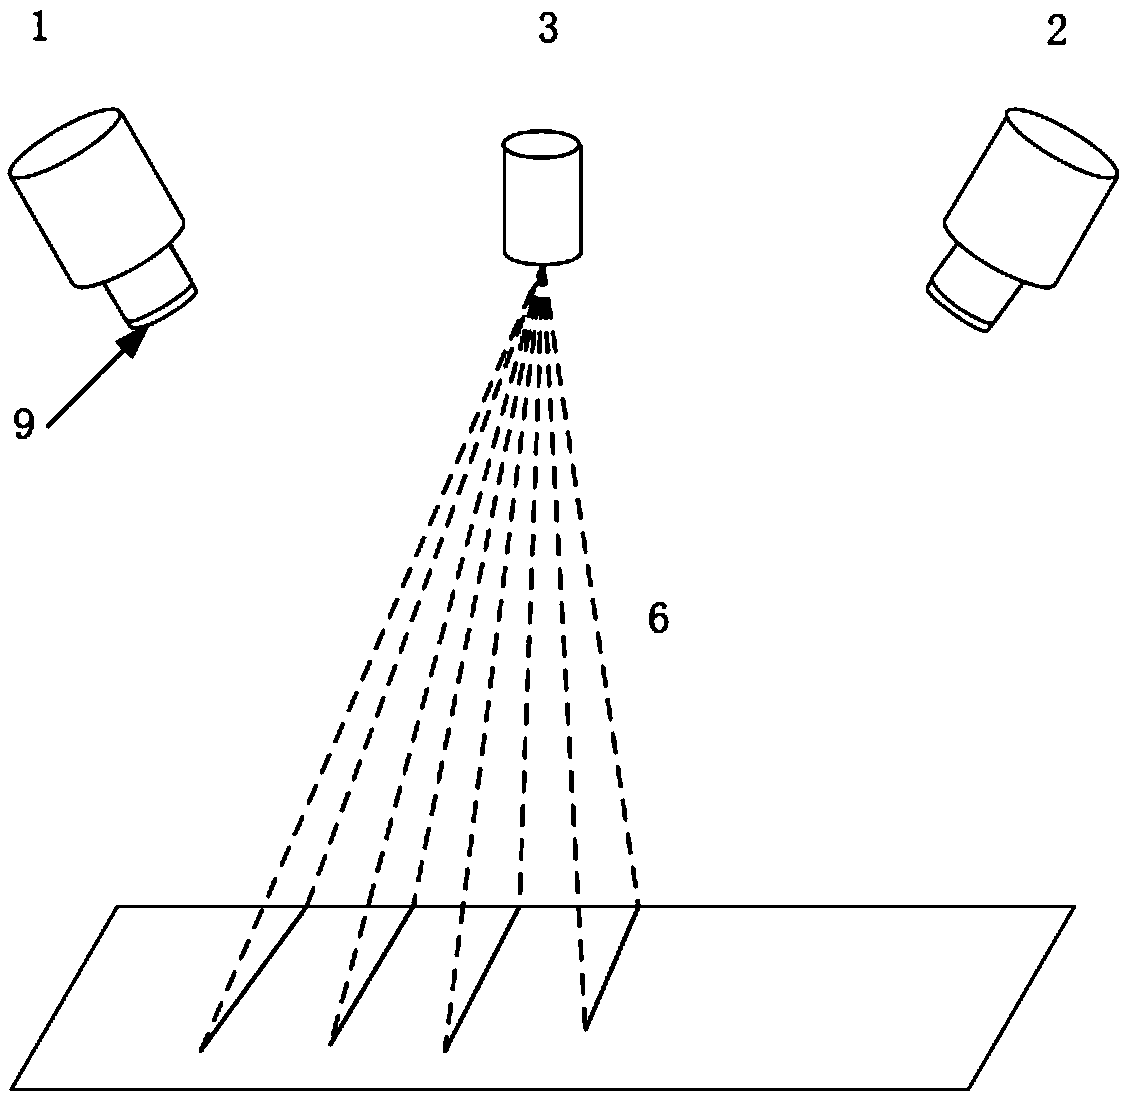 System and method for measuring parallel multi-line laser based on homography matrix